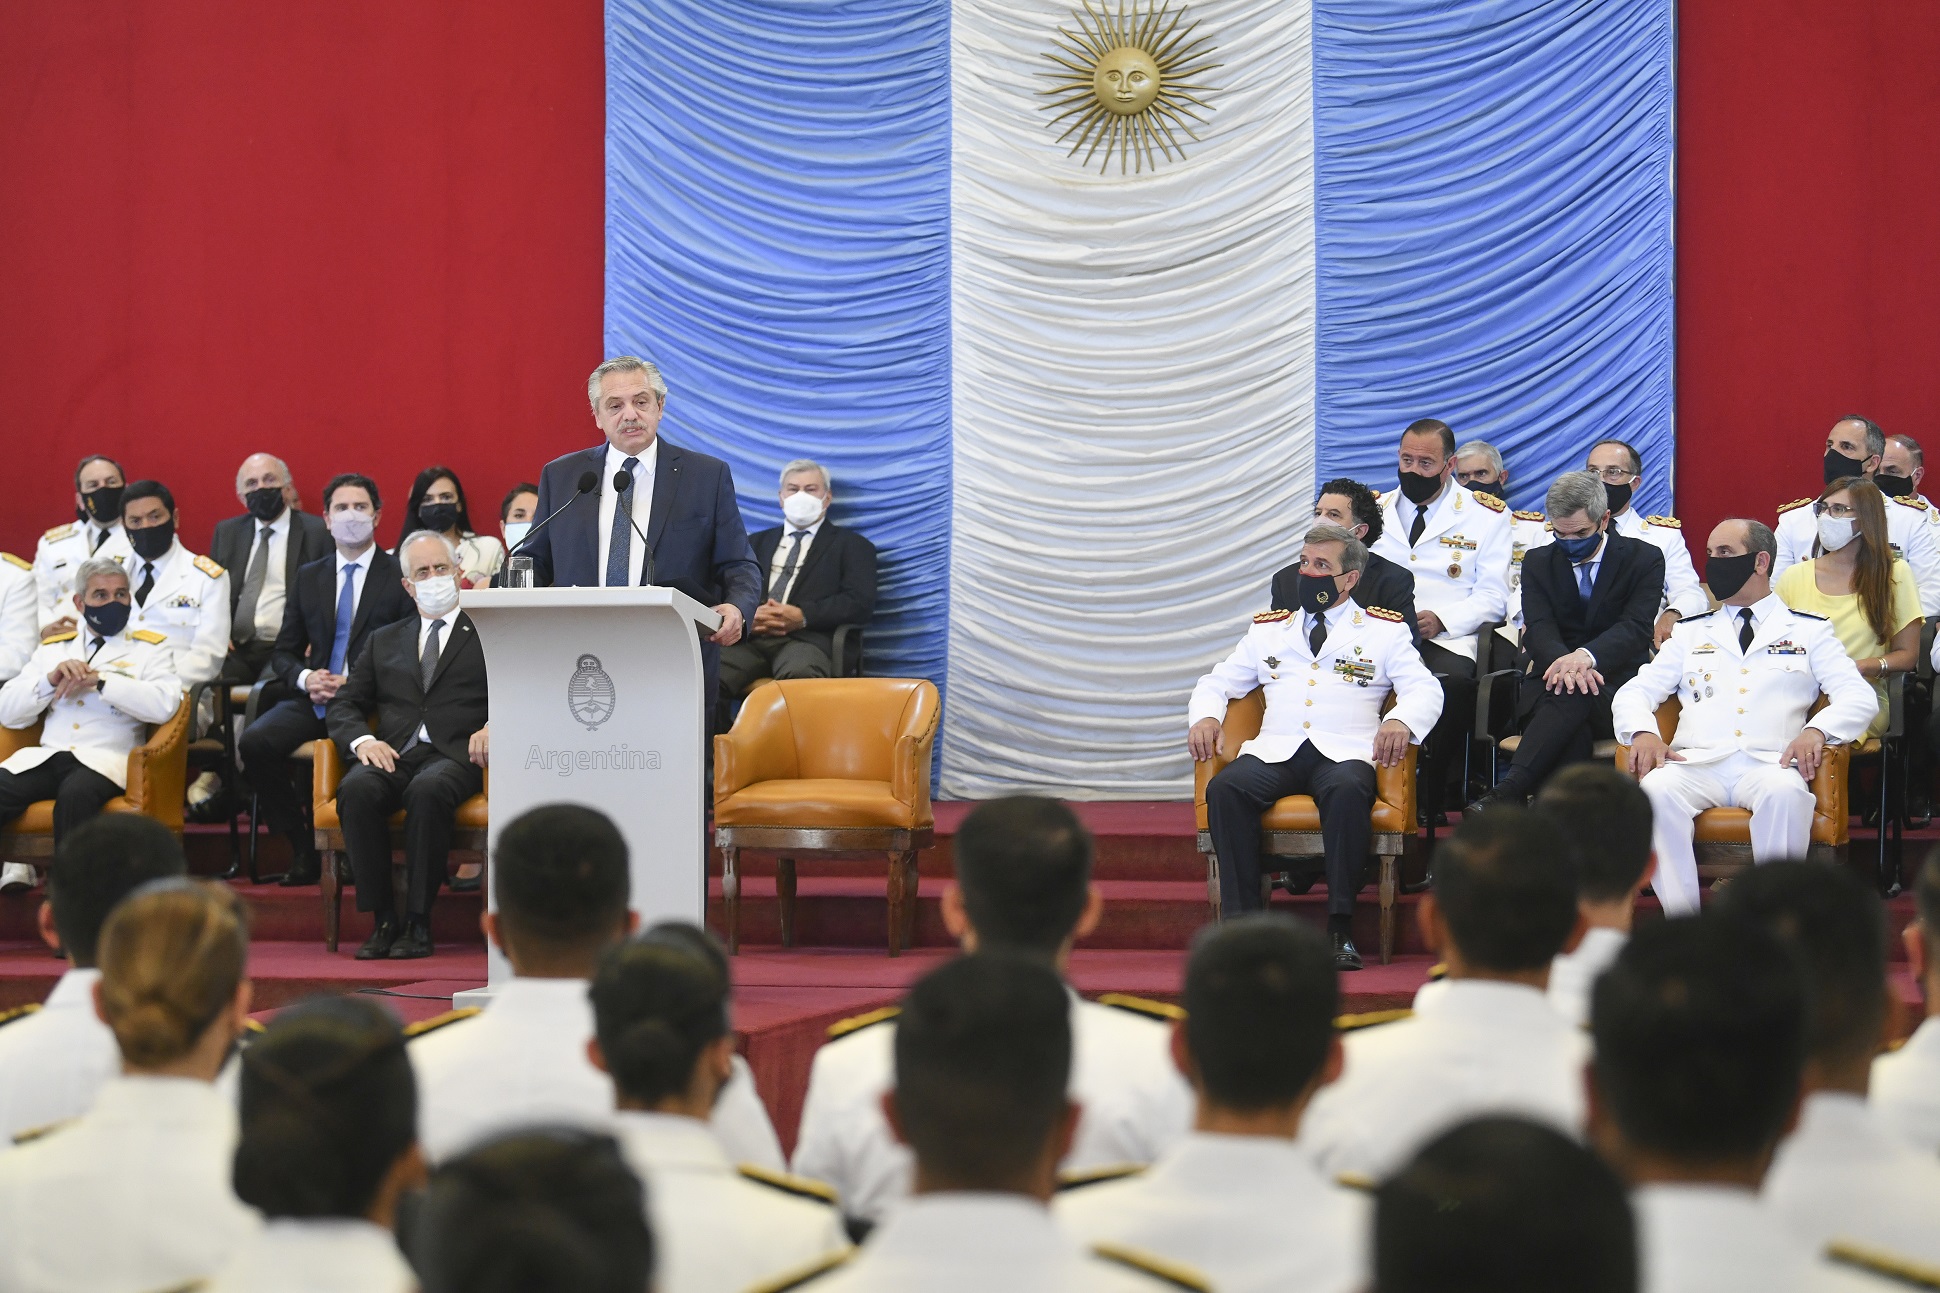 “Nunca olviden el compromiso que tienen con el pueblo de la Nación argentina”, pidió el presidente a los recién graduados de las Fuerzas Armadas​